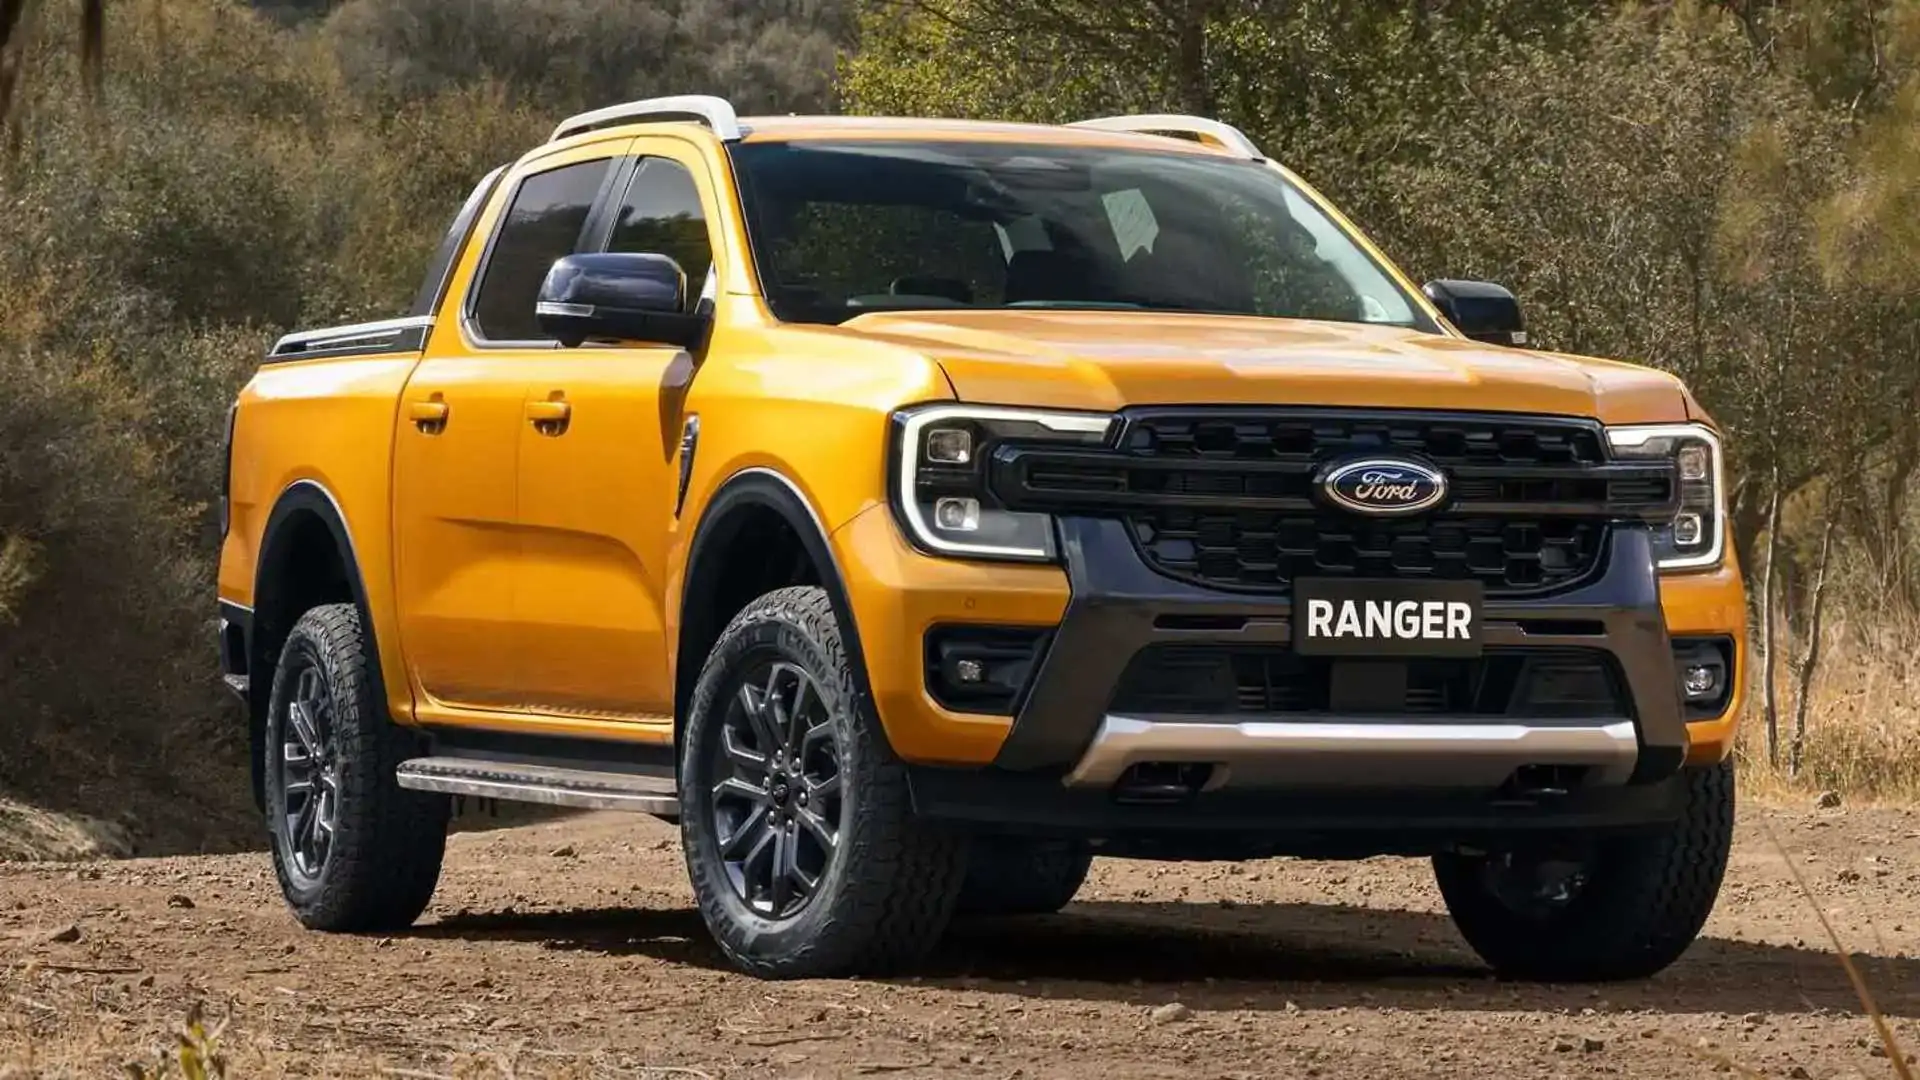  Ford Ranger